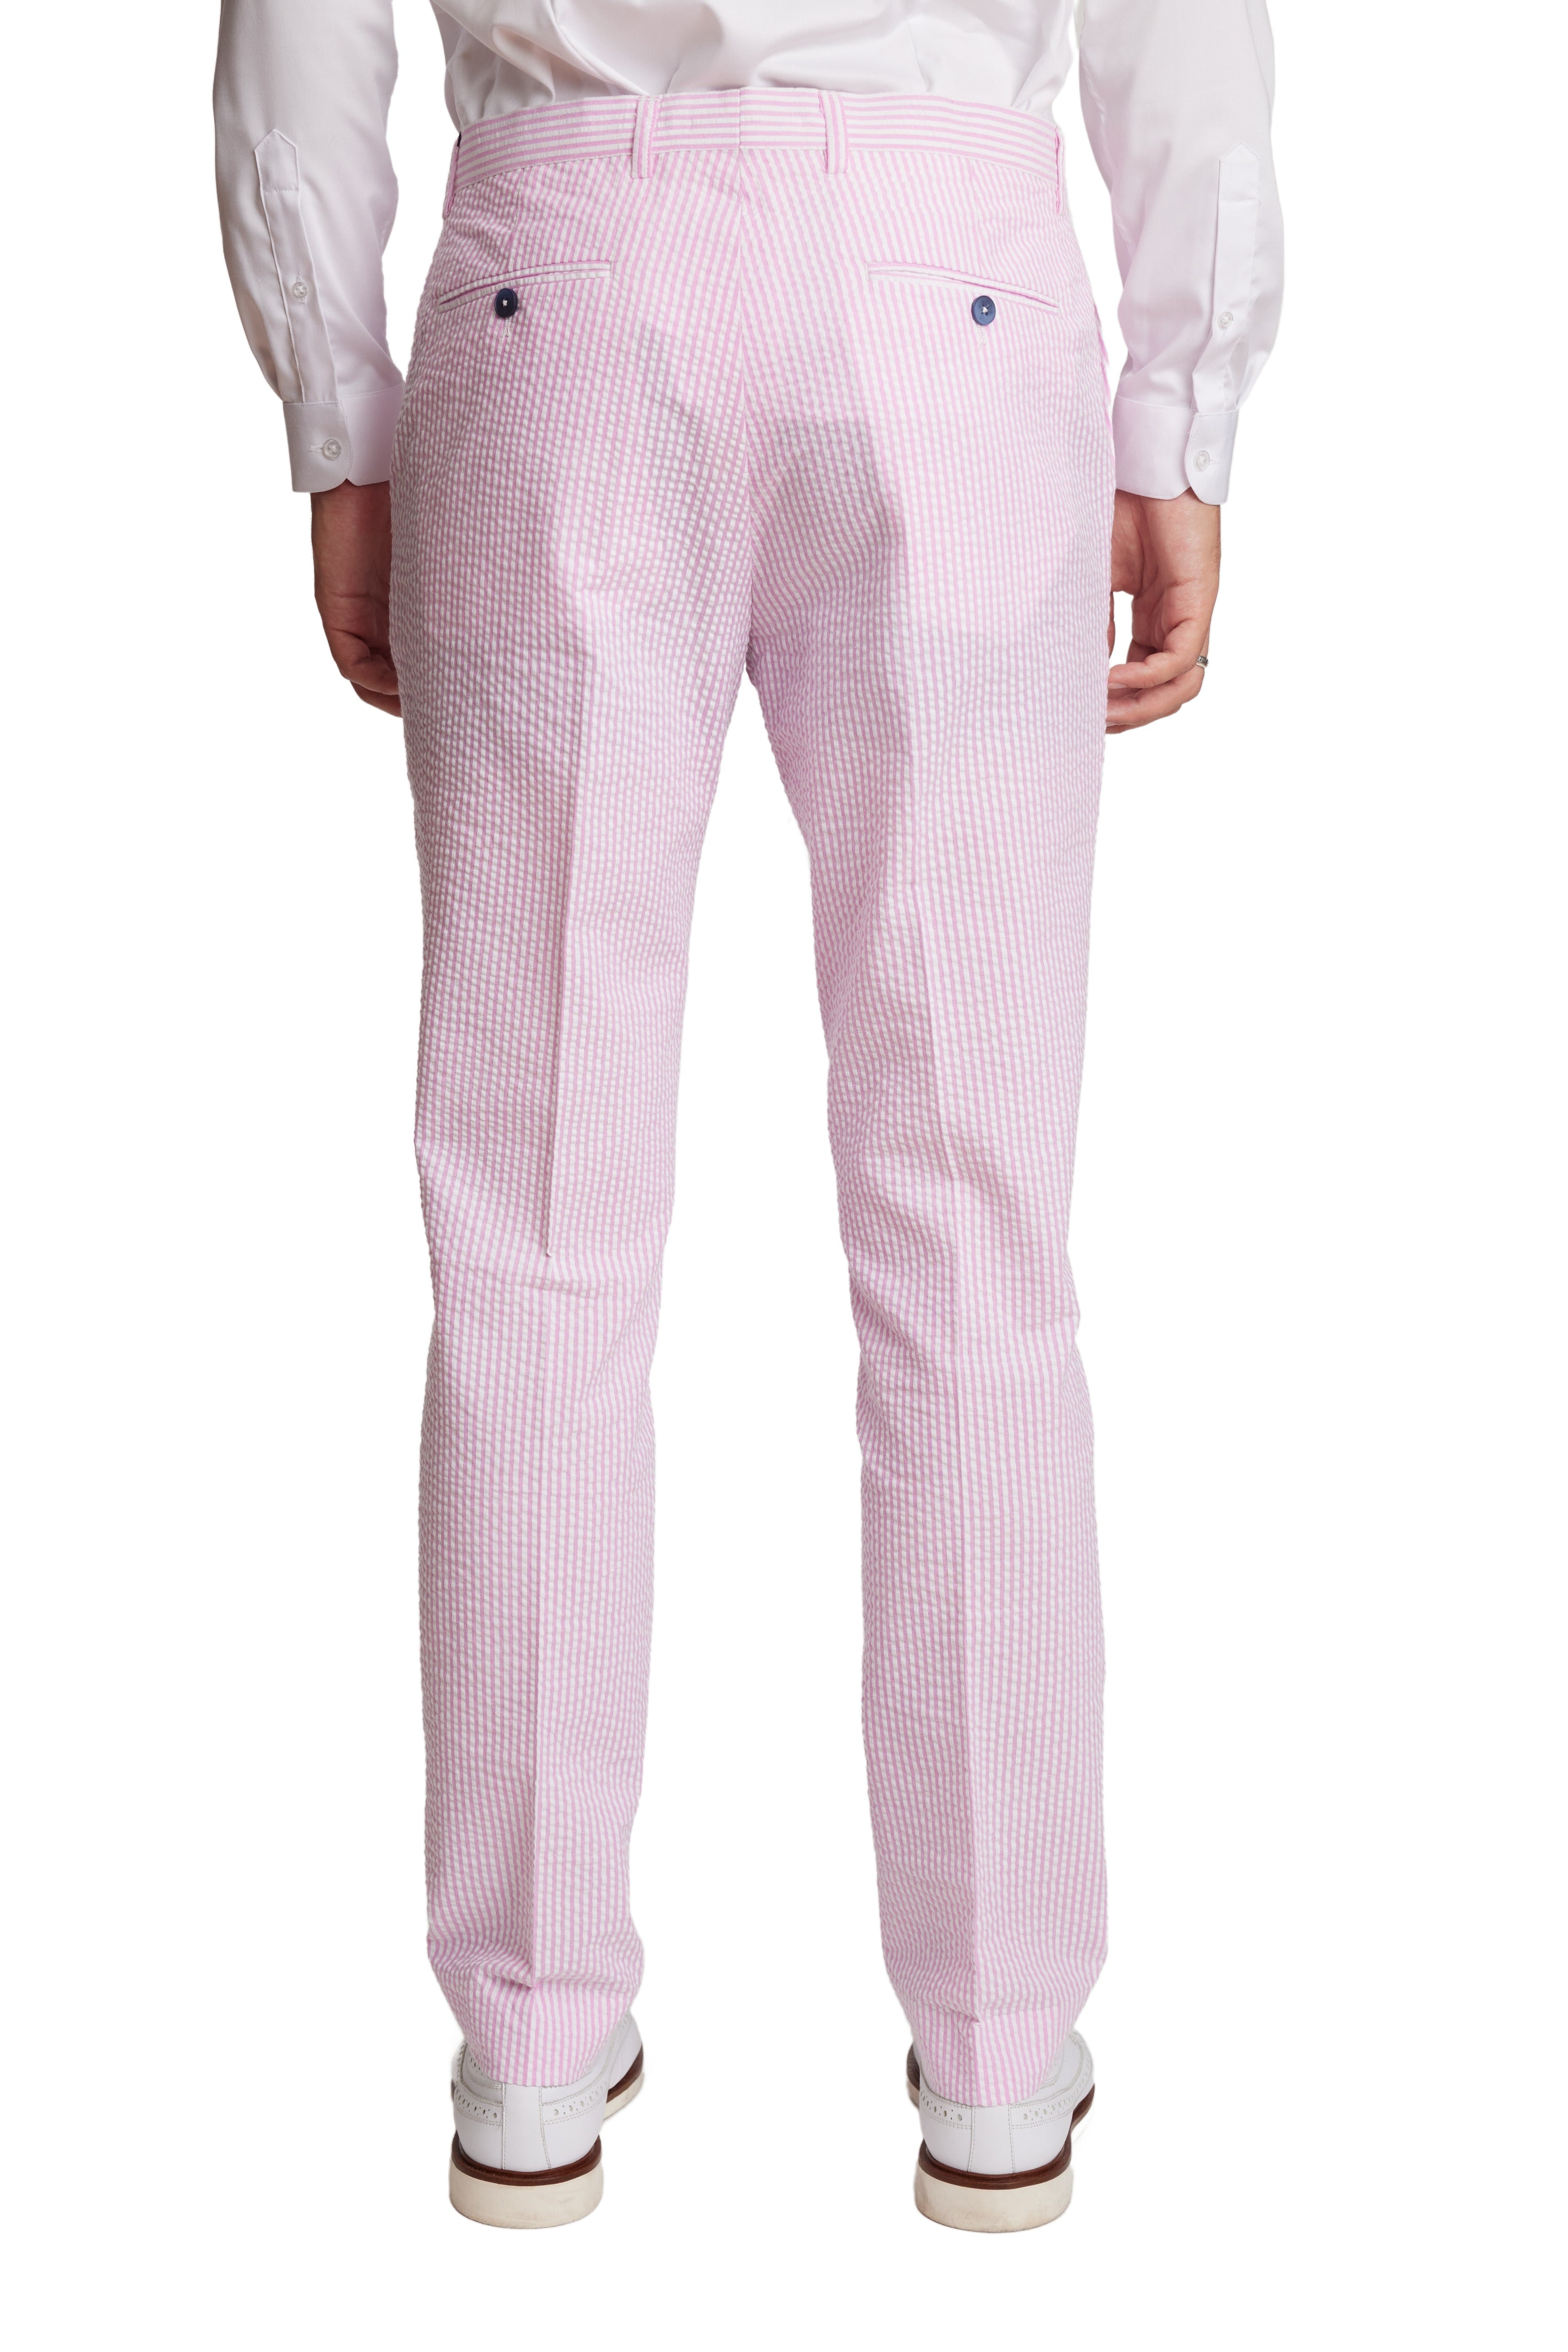 Downing Pants - slim - Pink Wht Seersucker Stripes